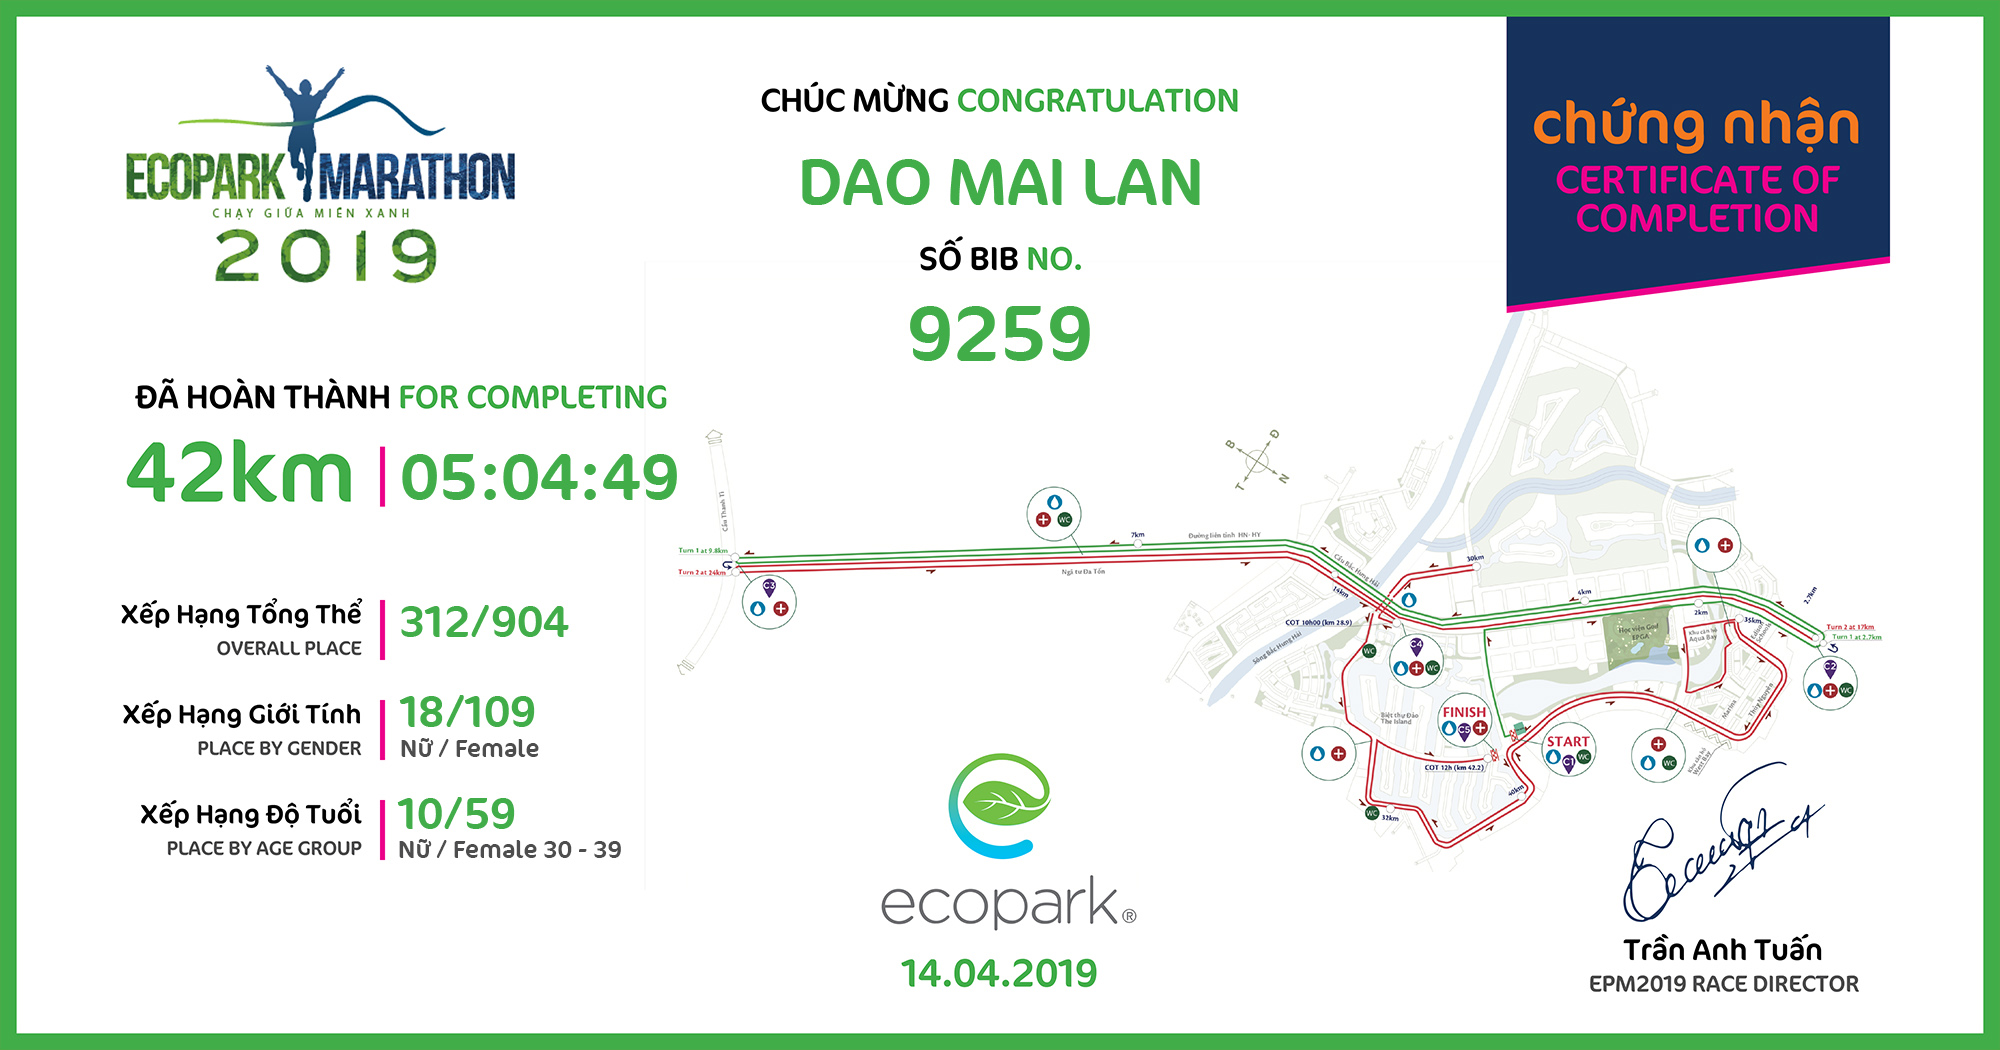 9259 - Dao Mai Lan